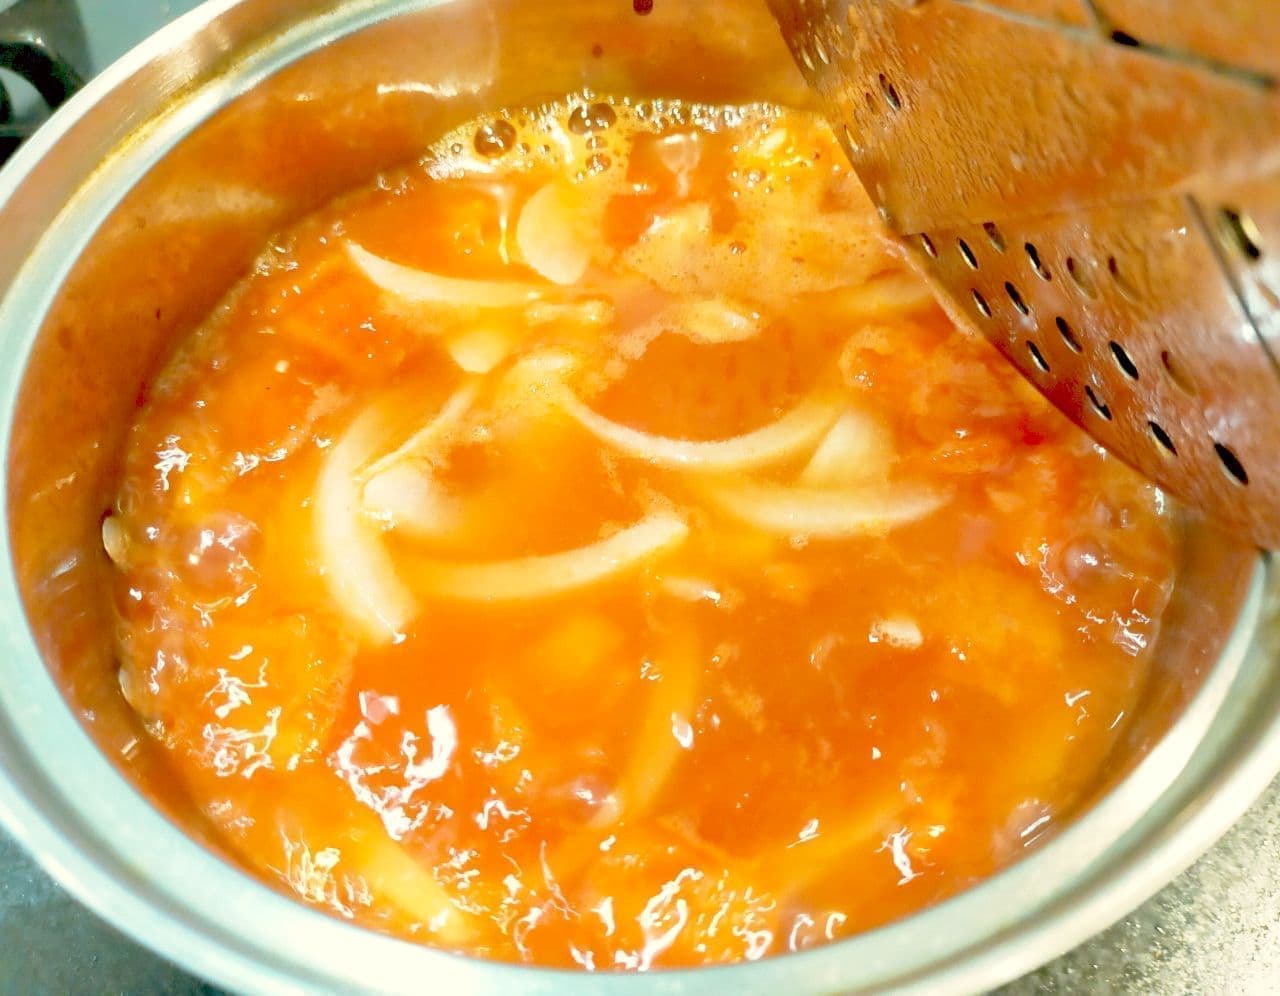 "Potato tomato boiled" recipe